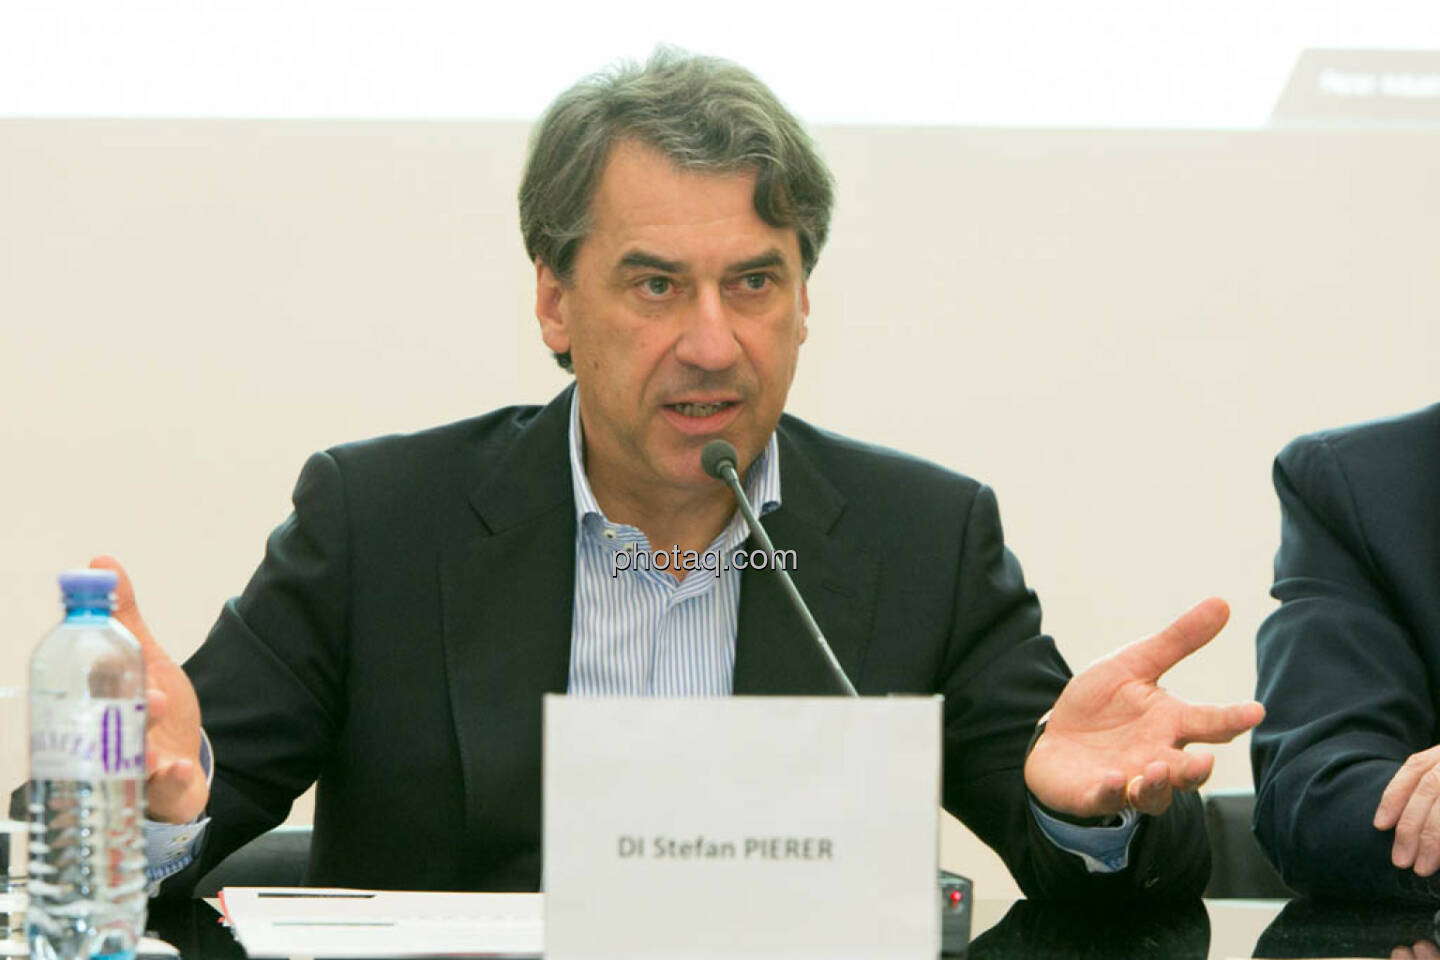 Stefan Pierer, Cross Industries AG